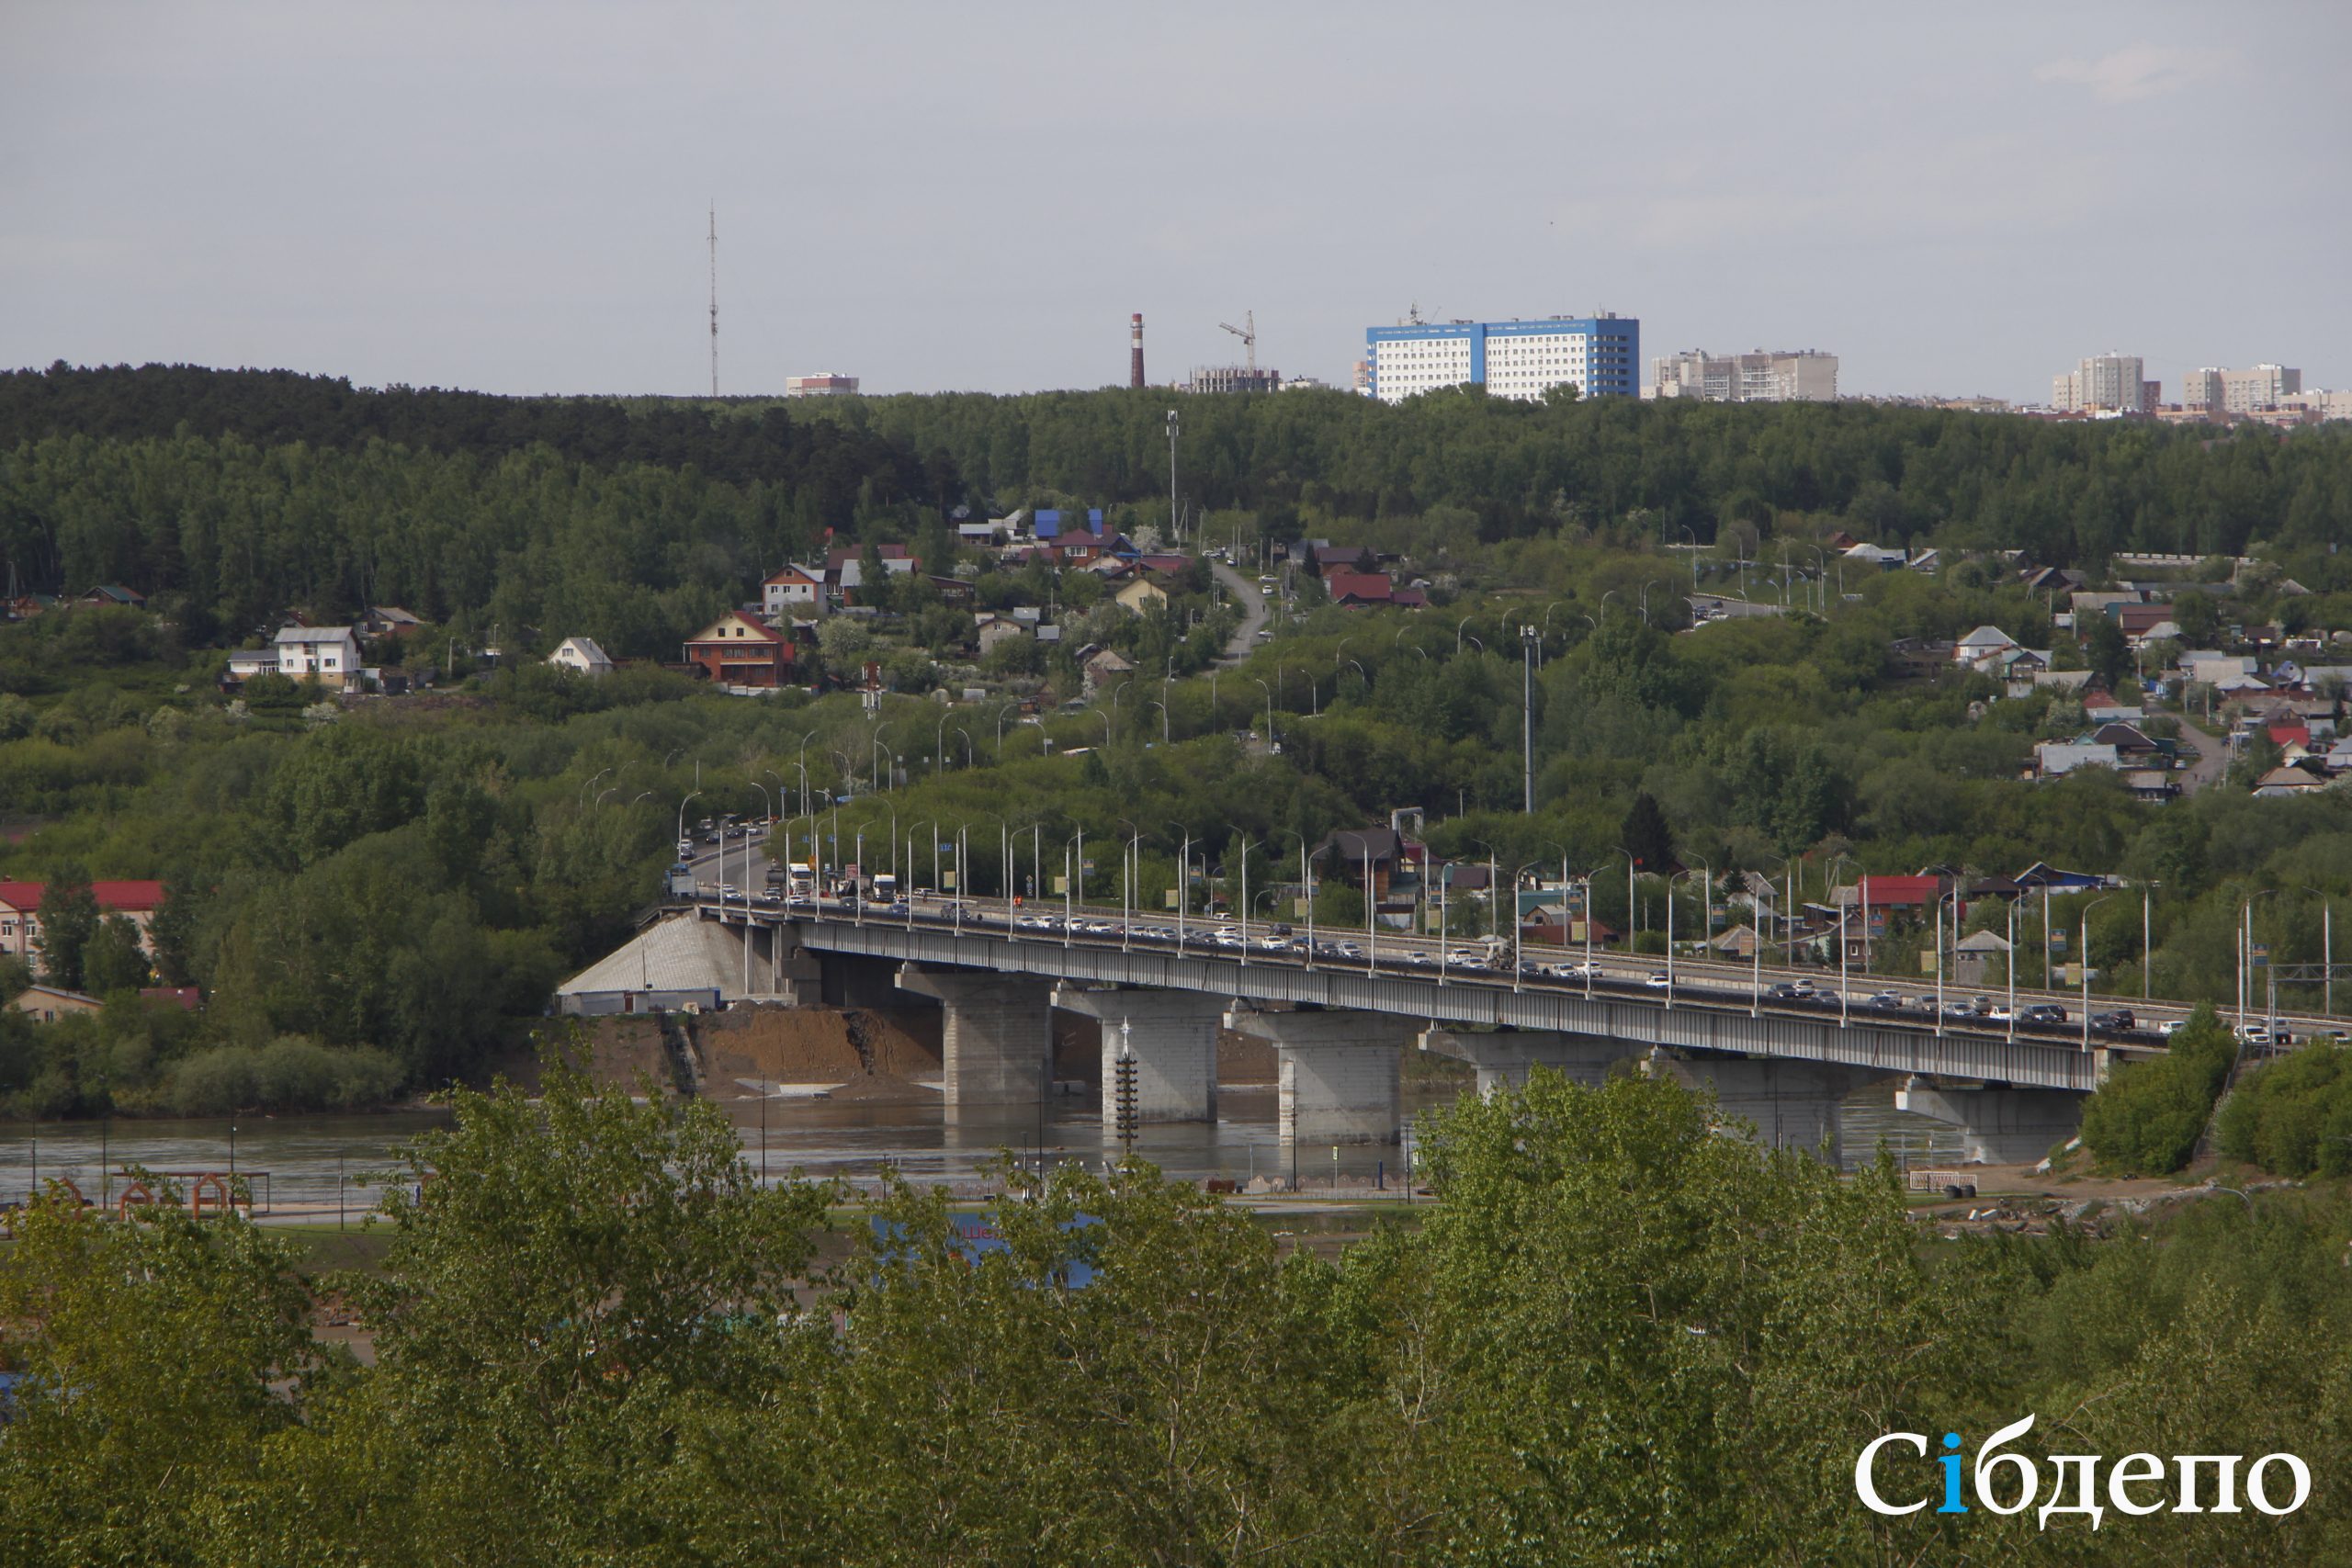 Мегапробки, фуры и несчастные коровы: первый день закрытия моста в Кемерове превратился в транспортный коллапс